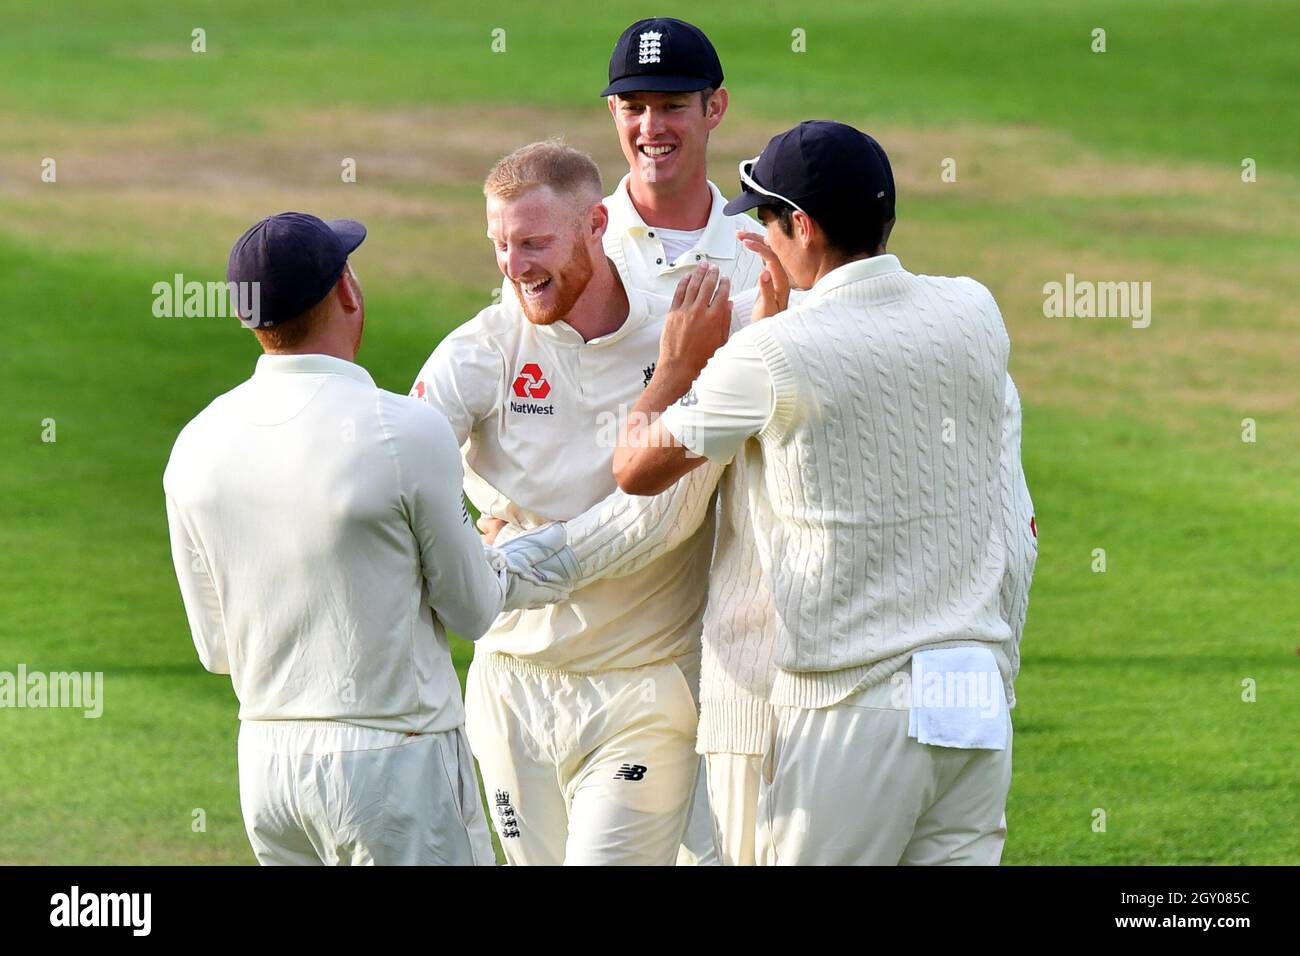 England’s Ben Stokes celebrates taking the wicket of India’s captain Virat Kohli during the test match at The Kia Oval, London. Stock Photo